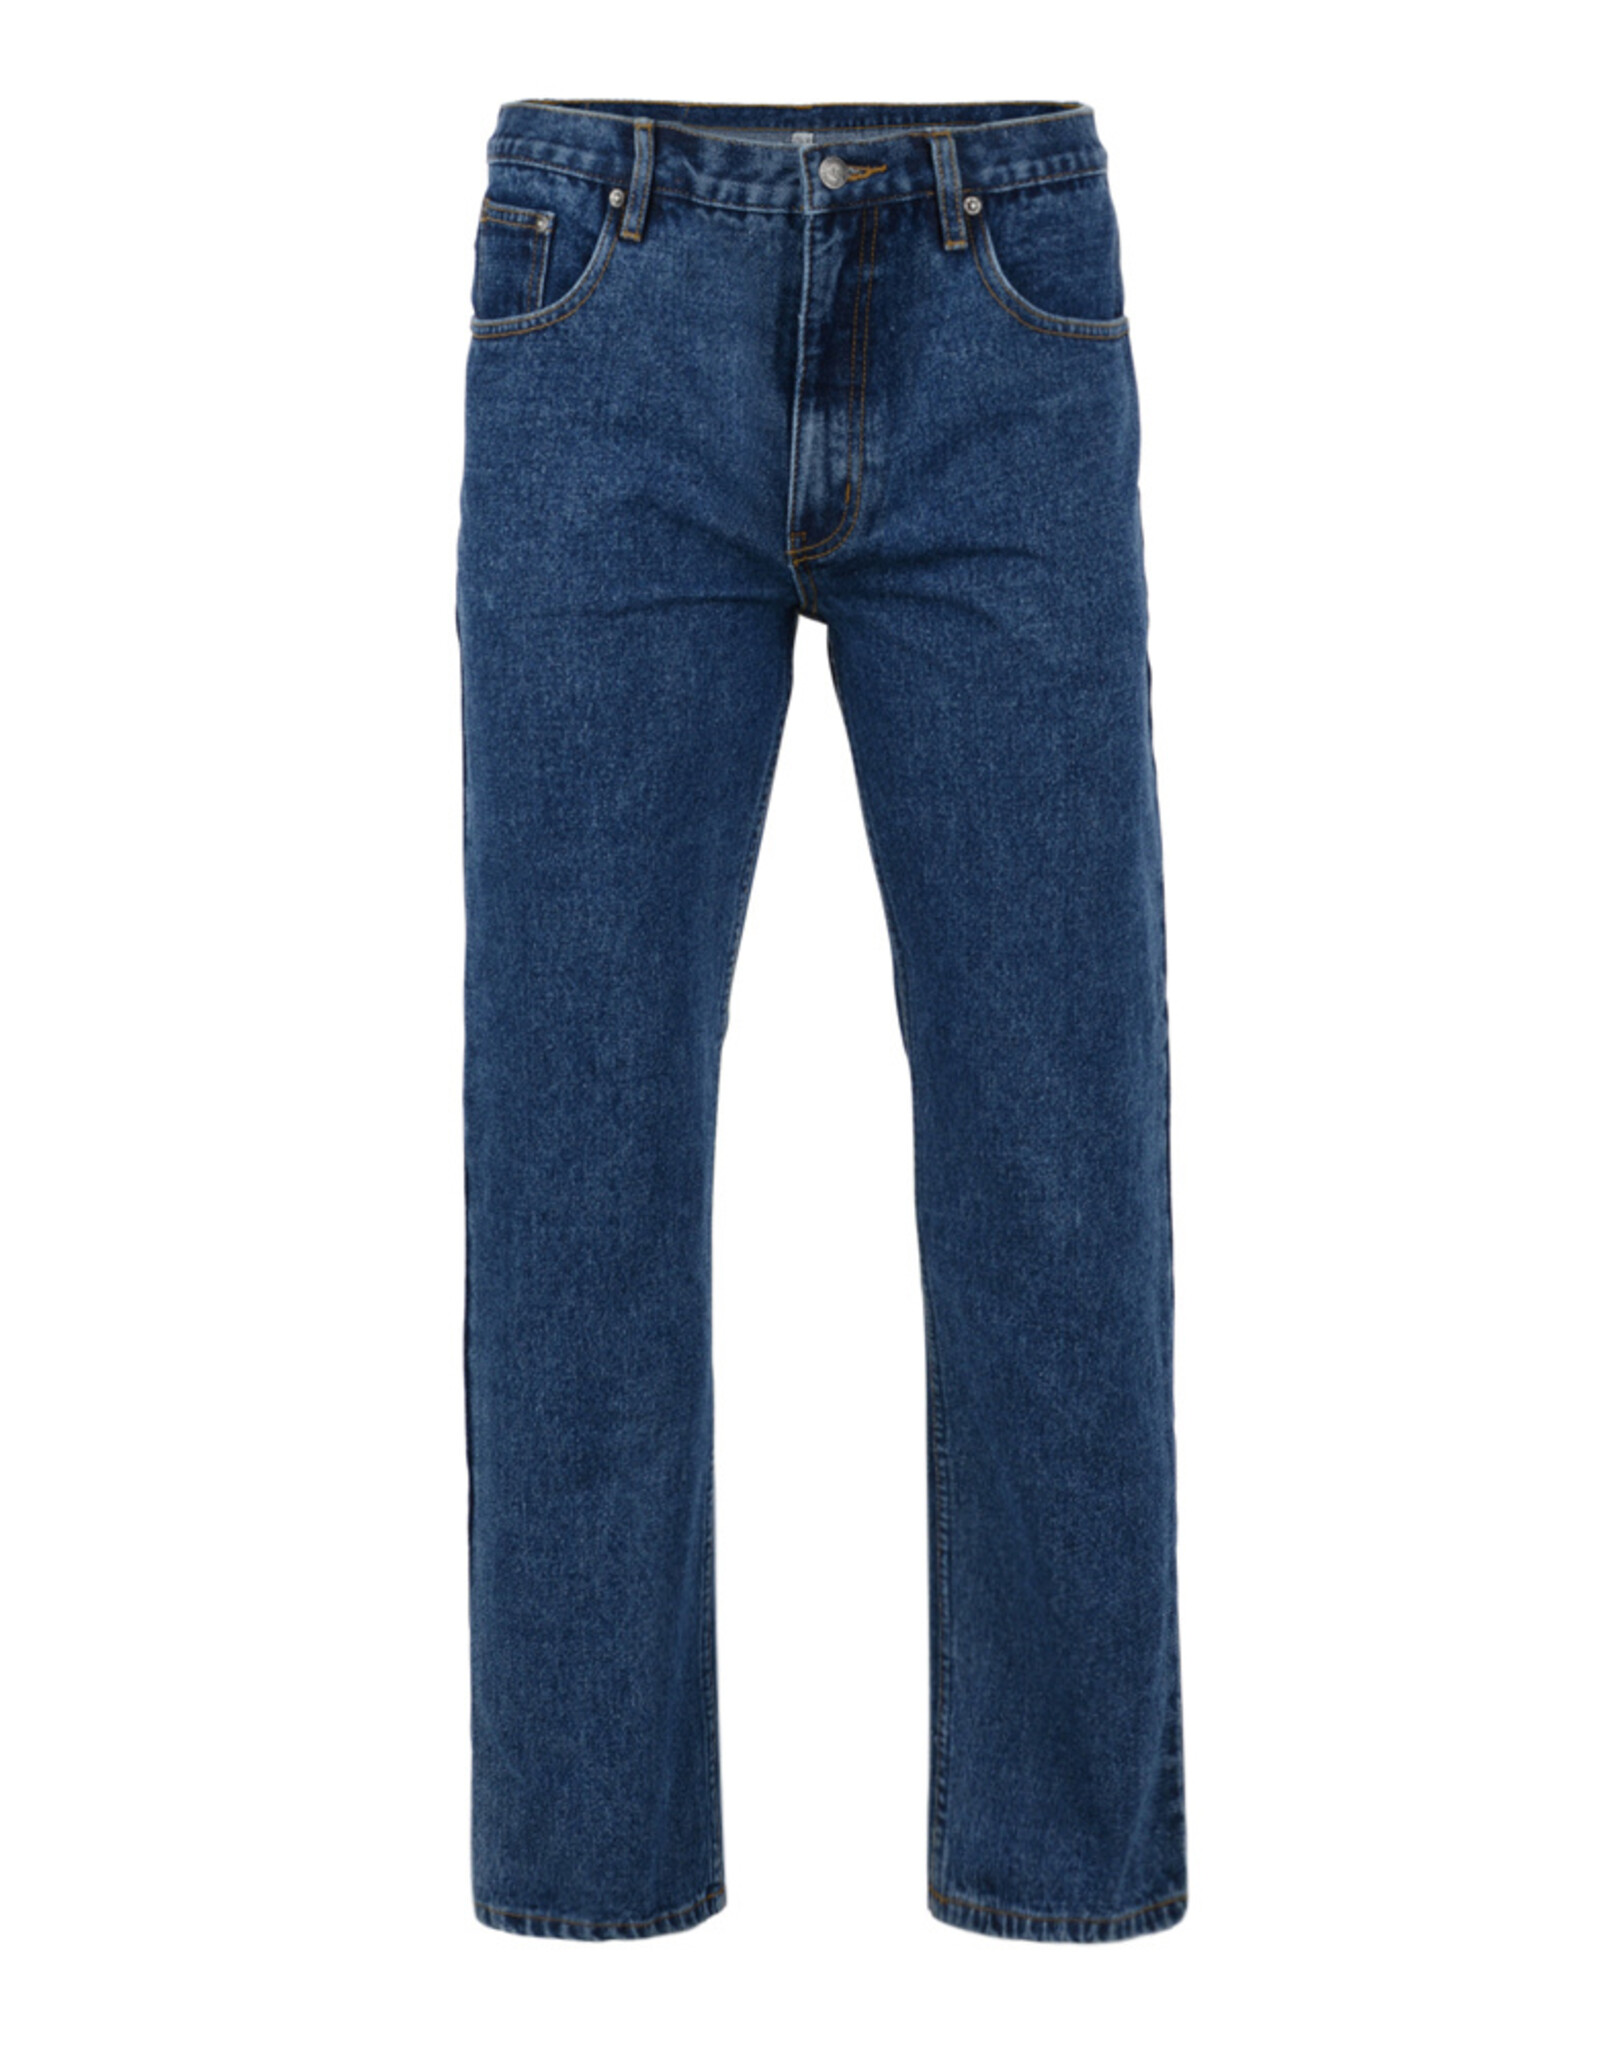 Kam Jeans JEANS spijkerbroek Regular fit Denim Stonewash blauw